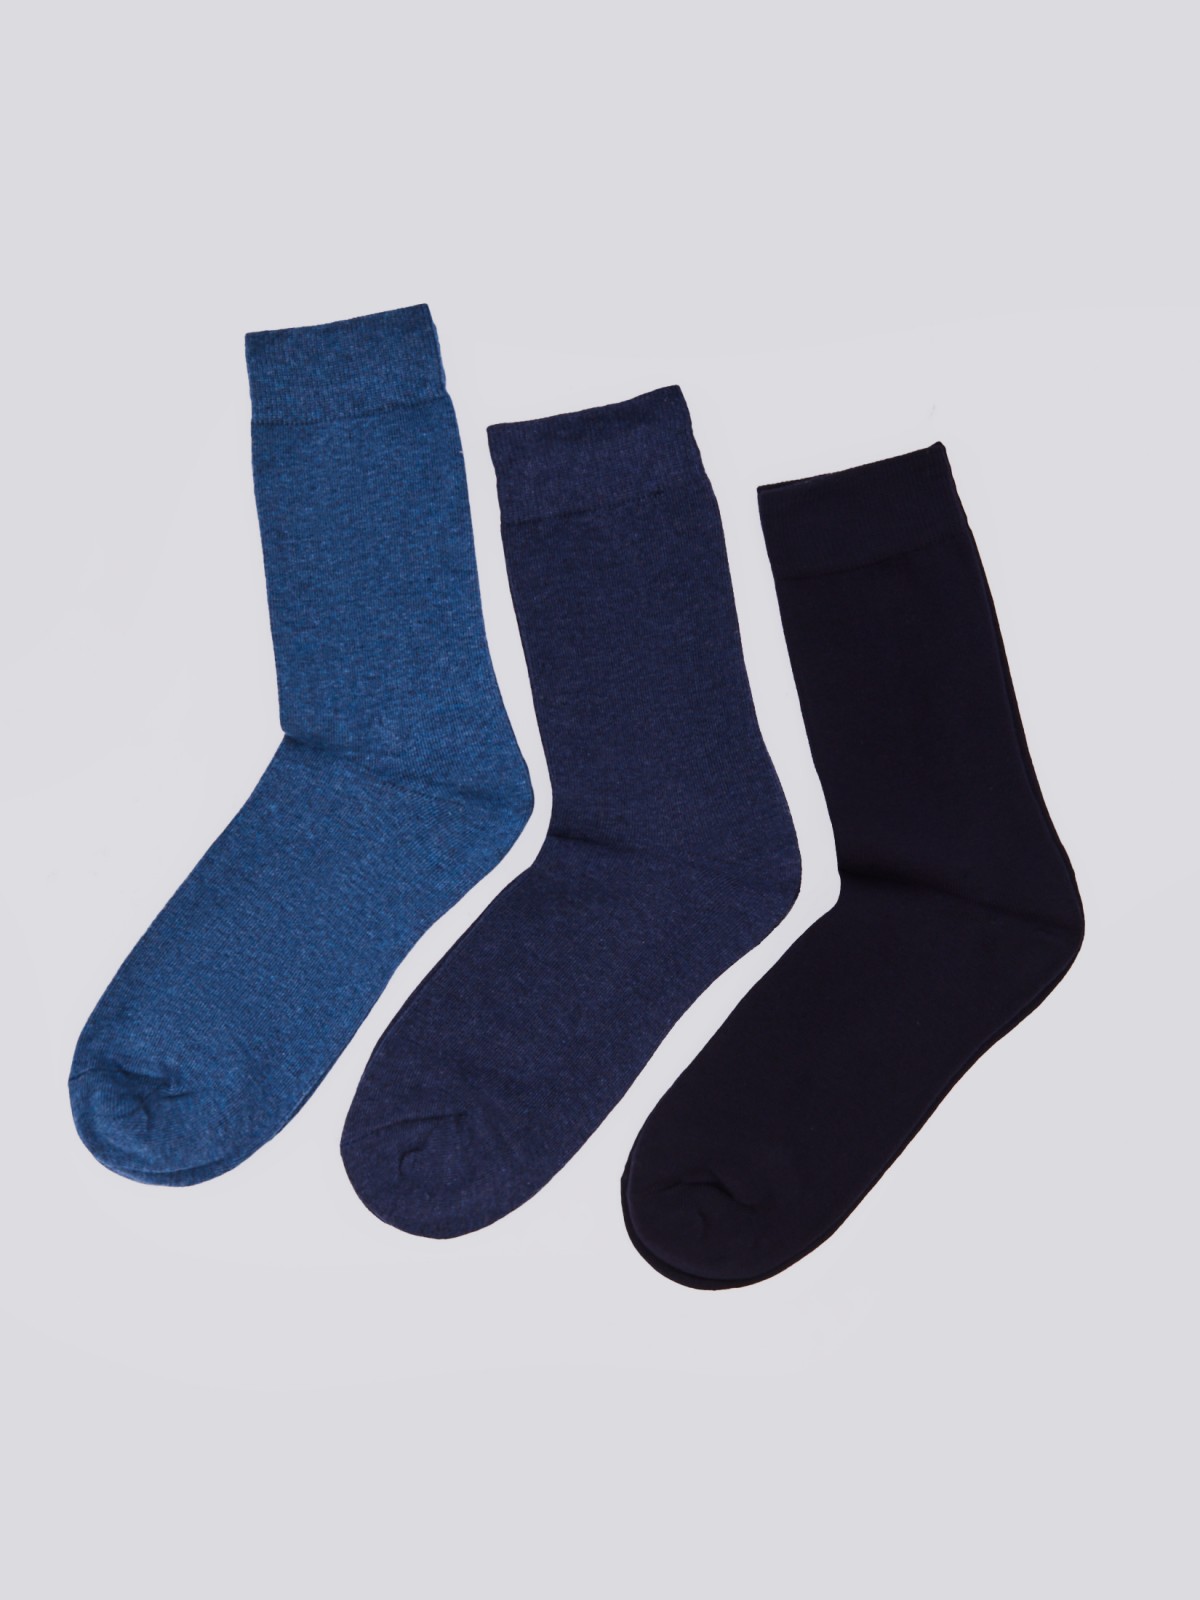 Набор носков (3 пары в комплекте) zolla 01411998J025, цвет темно-синий, размер 25-27